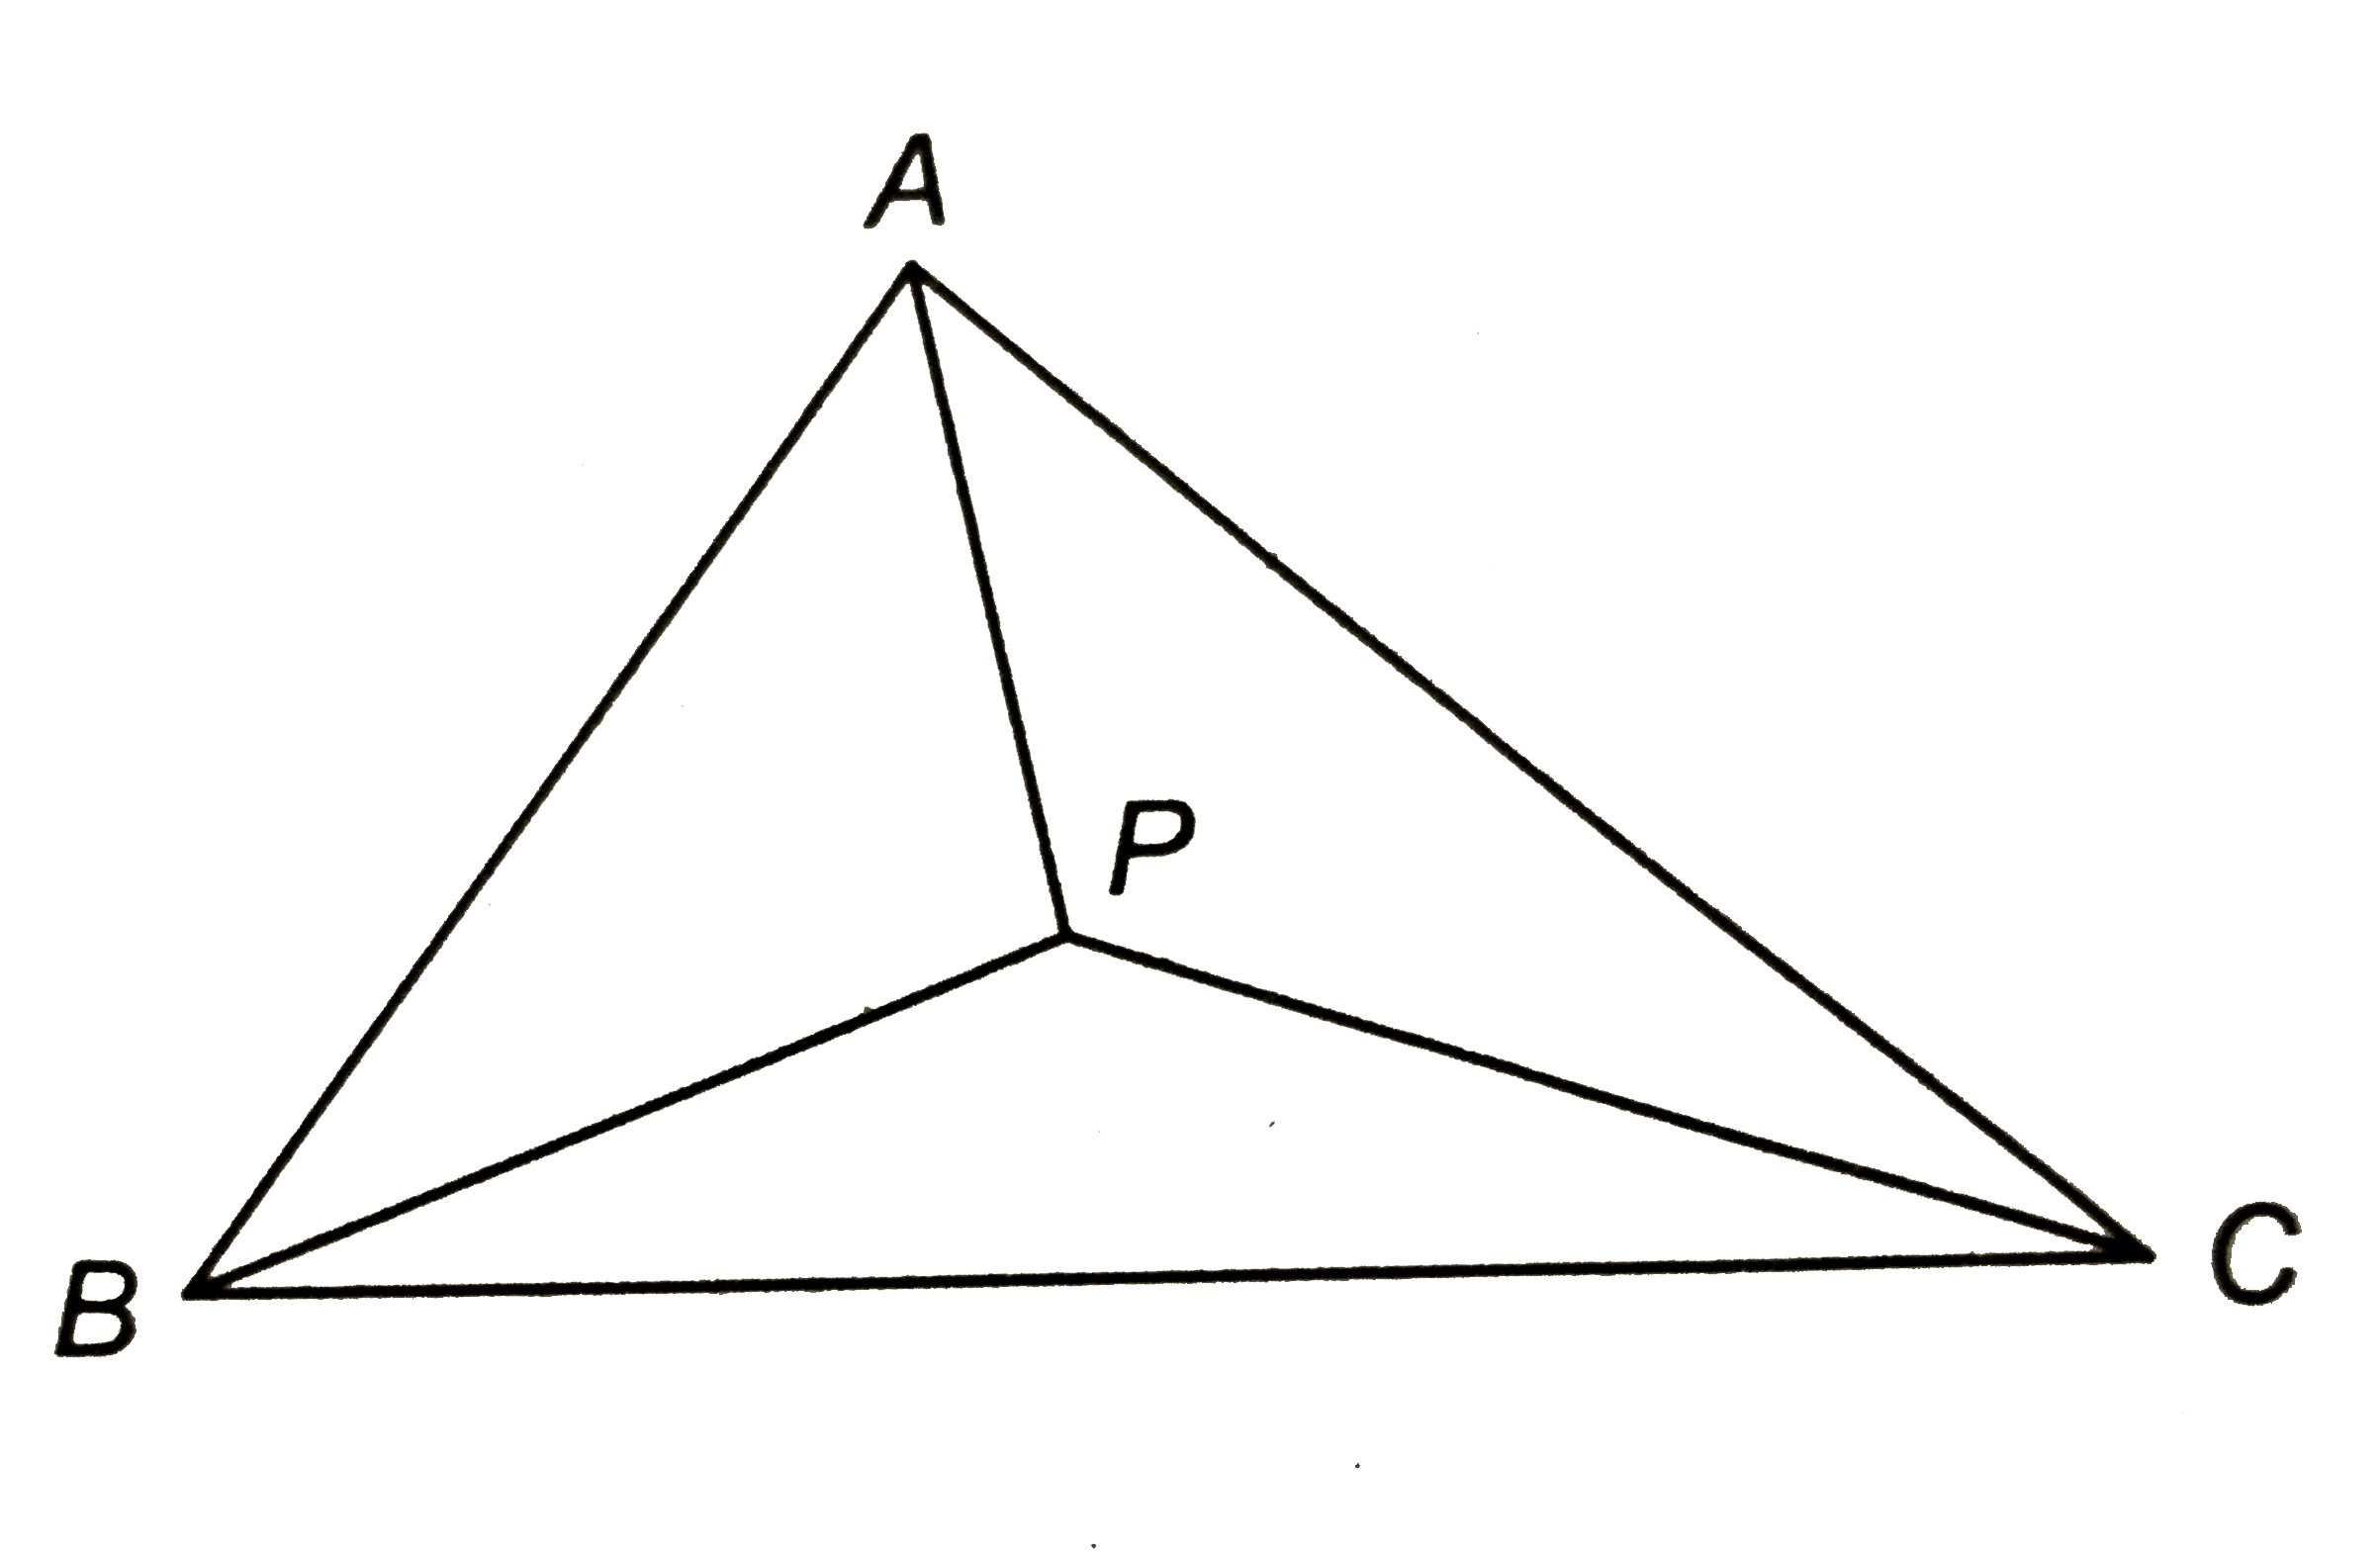 संलग्न चित्र में, DeltaABC का एक आन्तरिक बिन्दु P है। सिद्ध कीजिए कि AB+BC+CAlt2(PA+PB+PC)